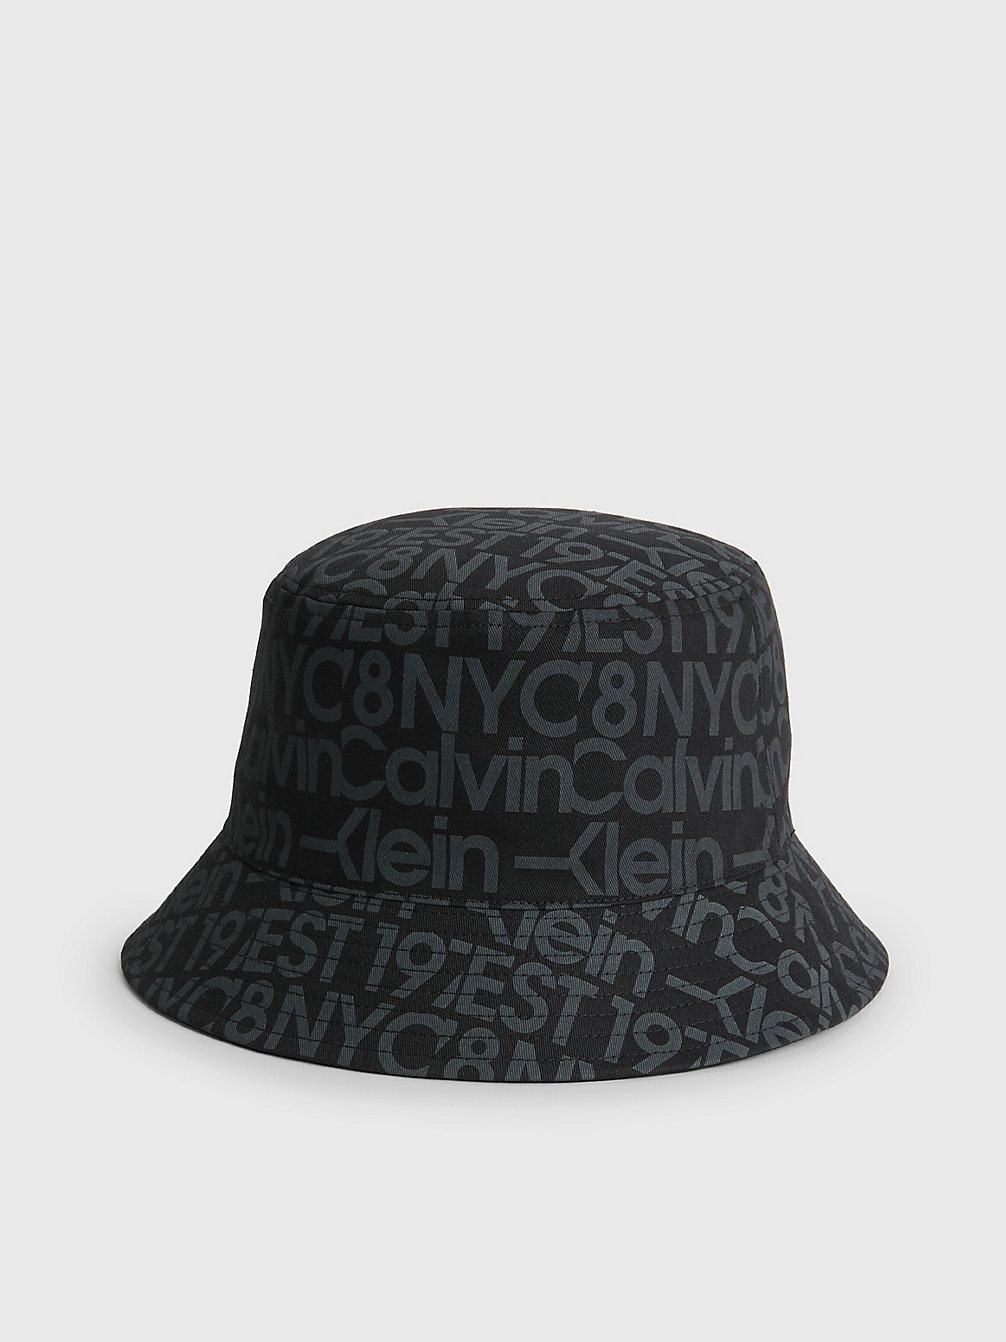 BLACK / OVERCAST GREY Organic Cotton Bucket Hat undefined men Calvin Klein